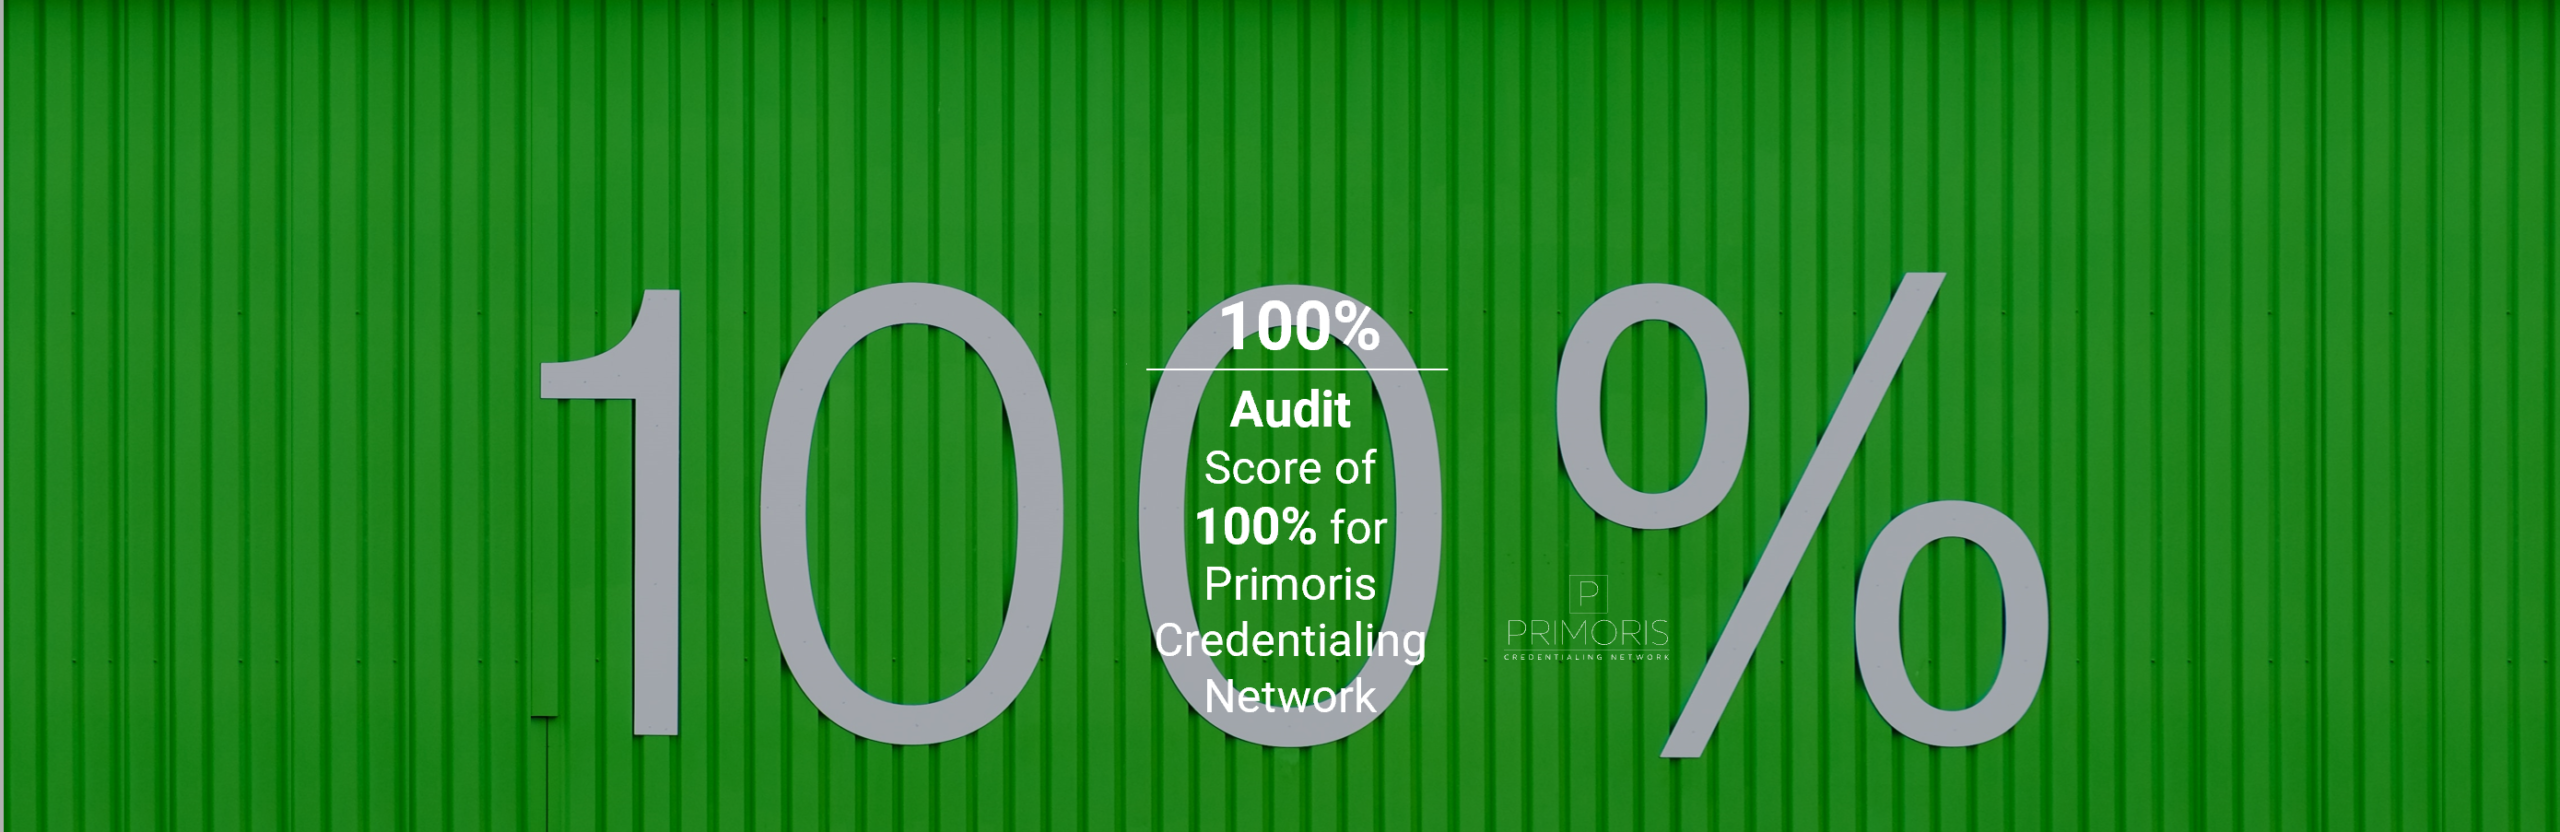 100% Audit Score